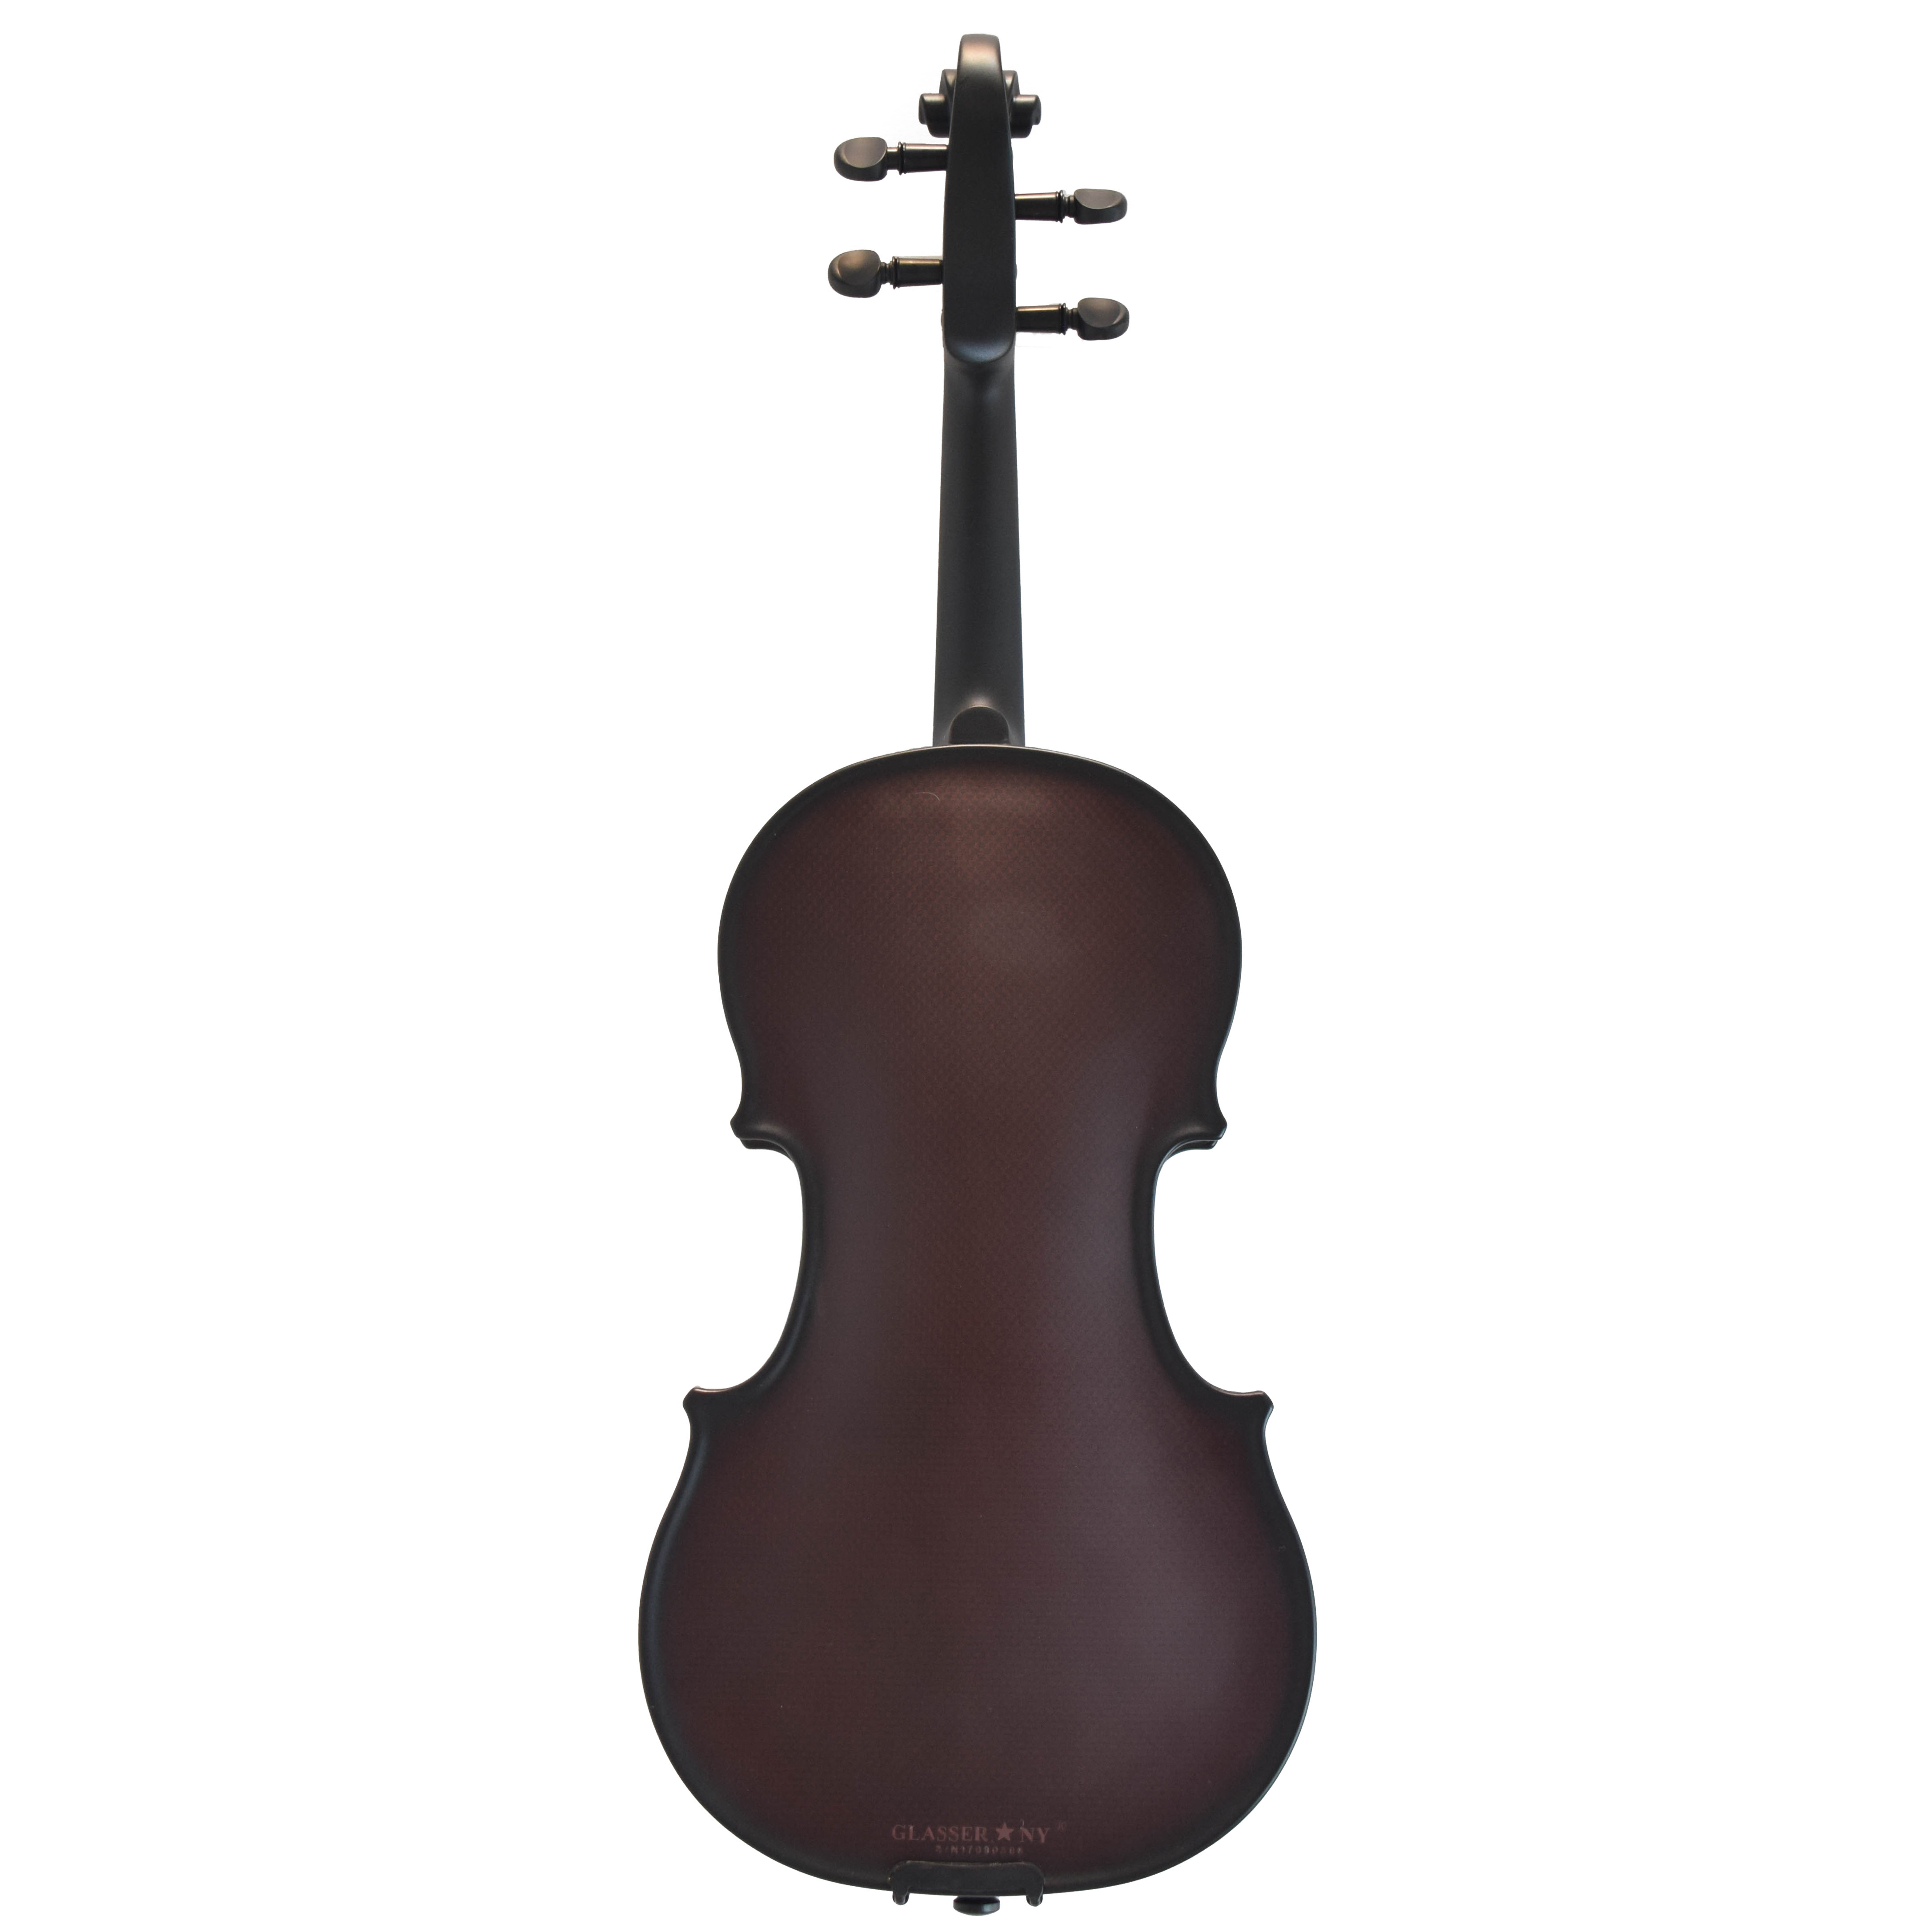 Glasser Carbon Violin, 1/2-3/4